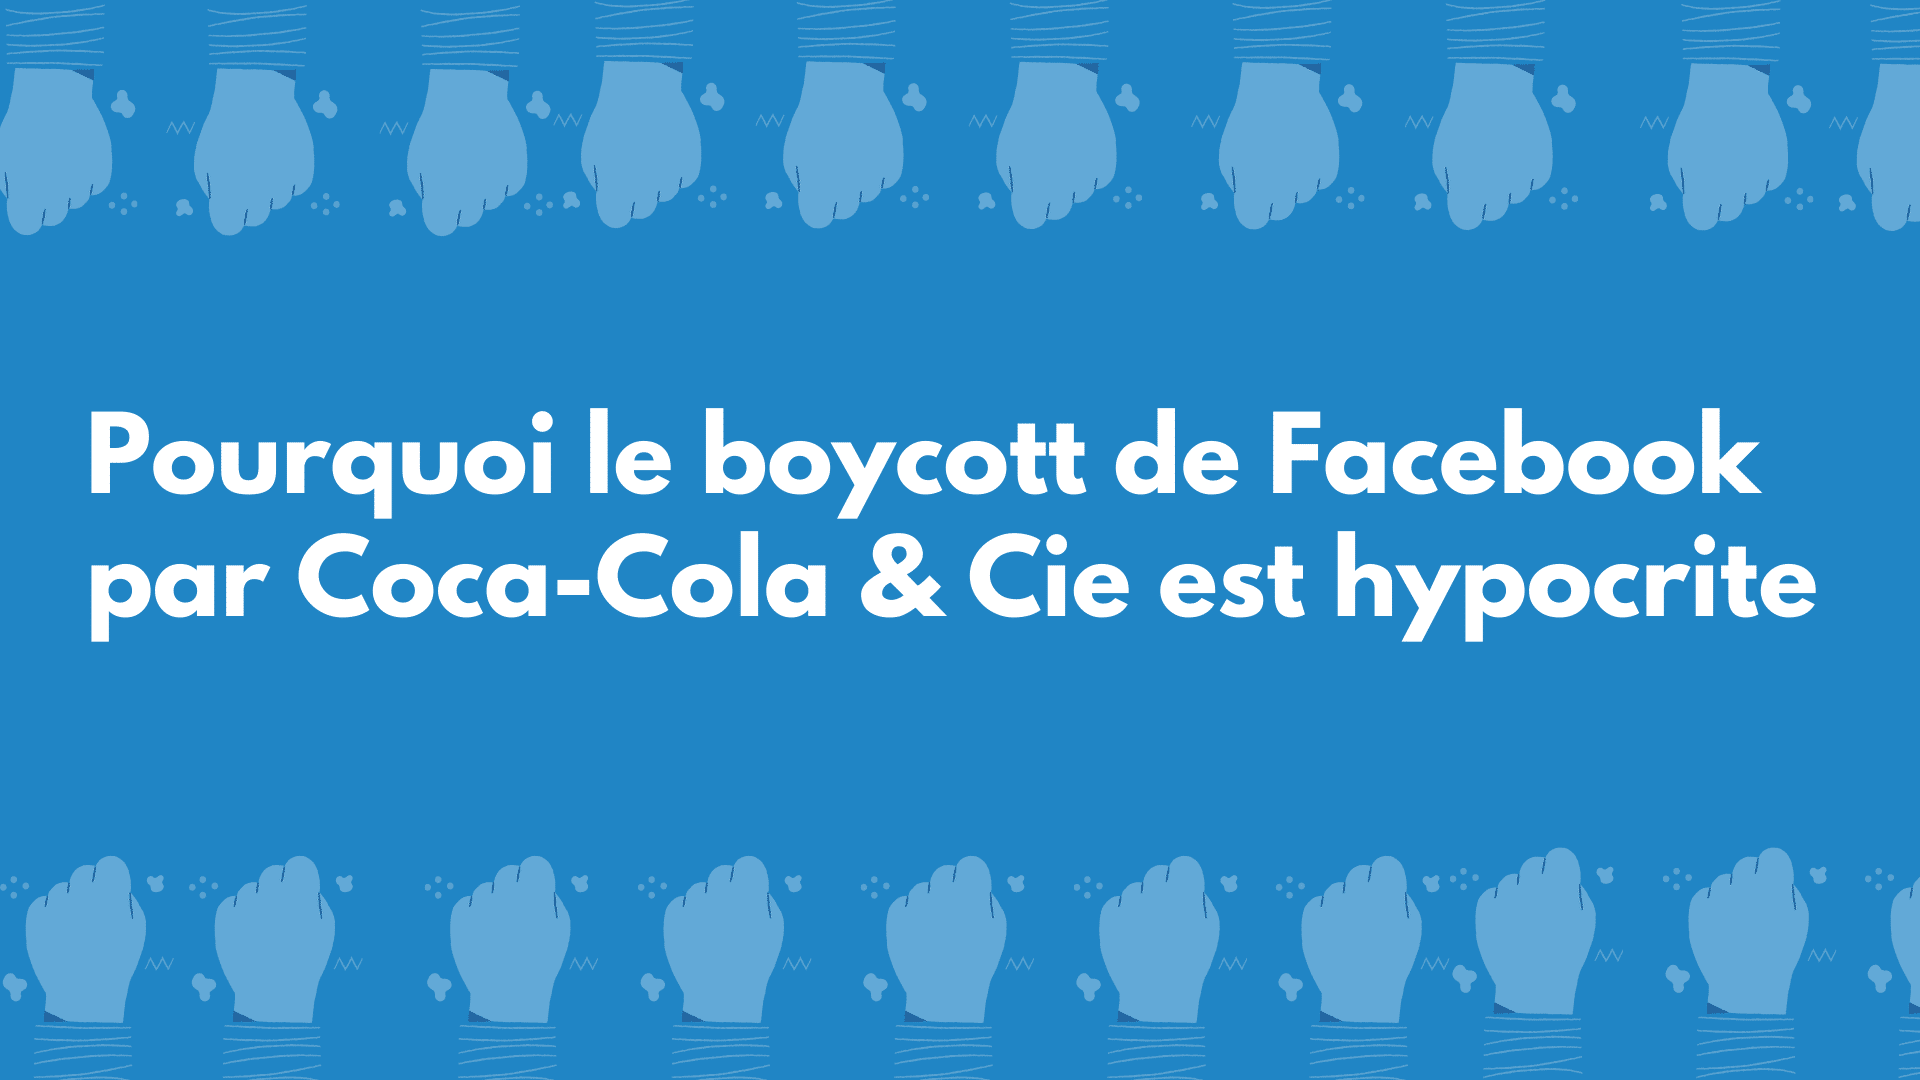 Marketing digital : Pourquoi le boycott de Facebook & Cie par Coca-Cola & Cie, c’est hypocrisie & Cie